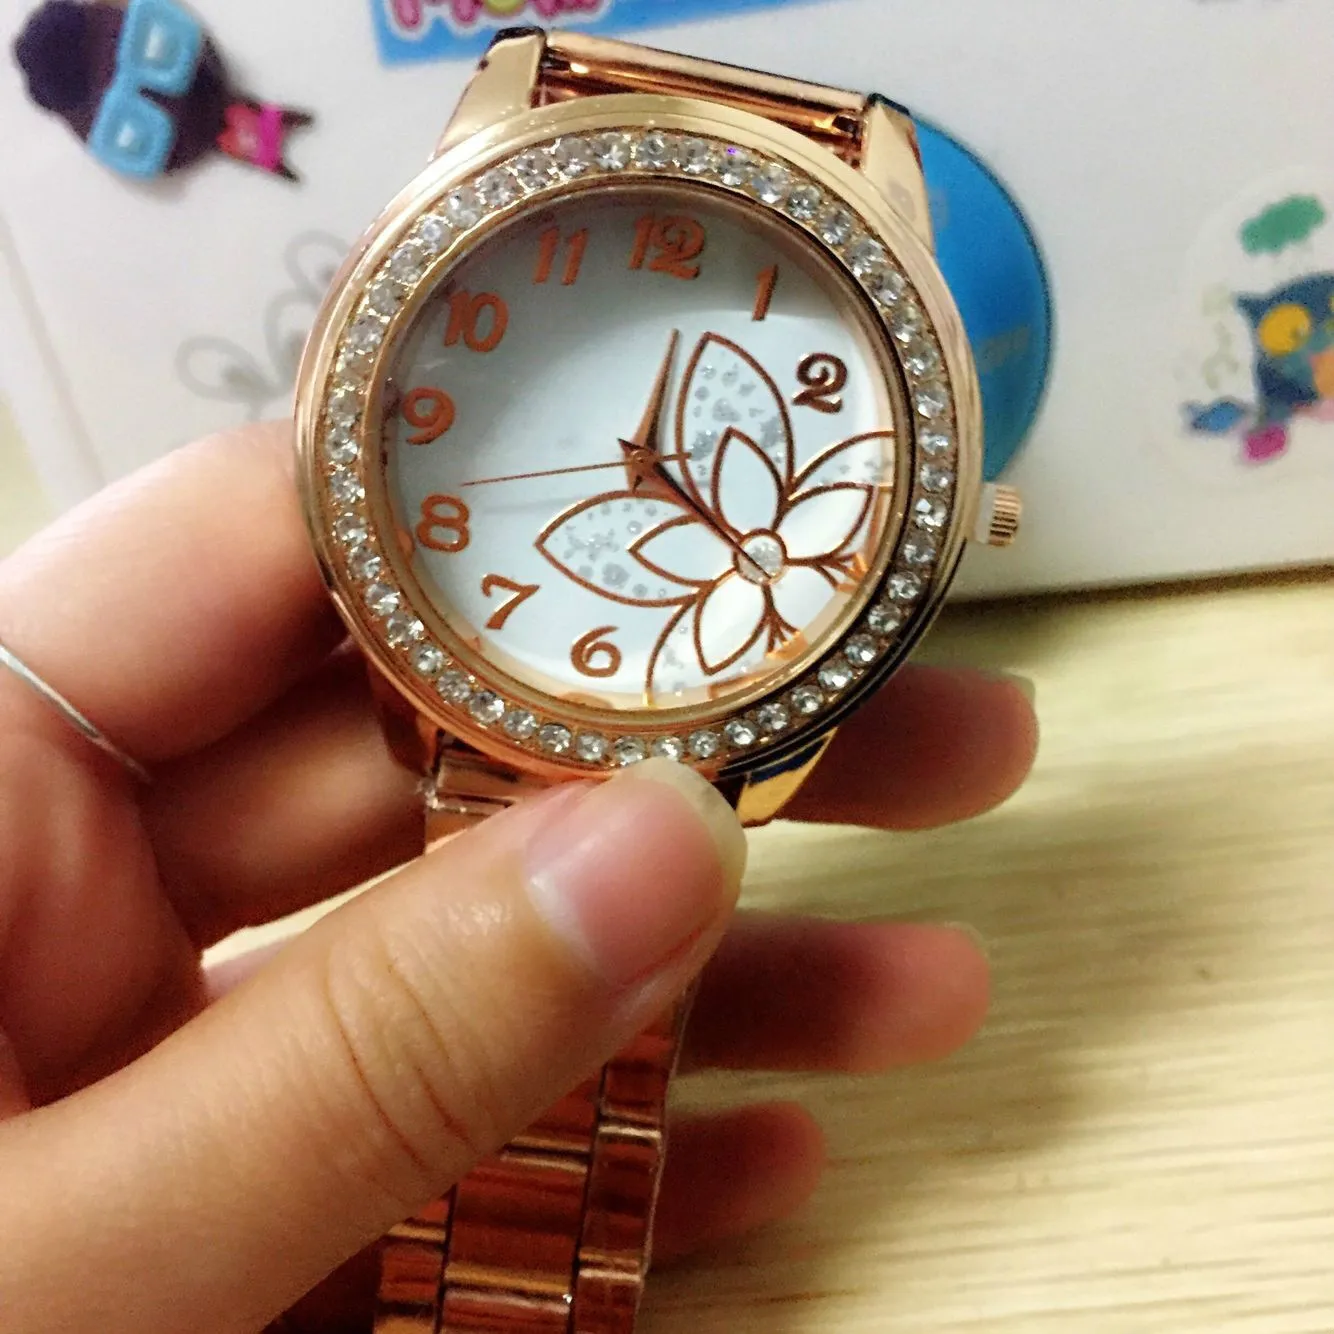 Высокое качество Благородный серебряная Роза женские часы Топ бренд класса люкс кварц нержавеющая сталь часы A61 наручные часы Relojes HOMBRE - Цвет: rose